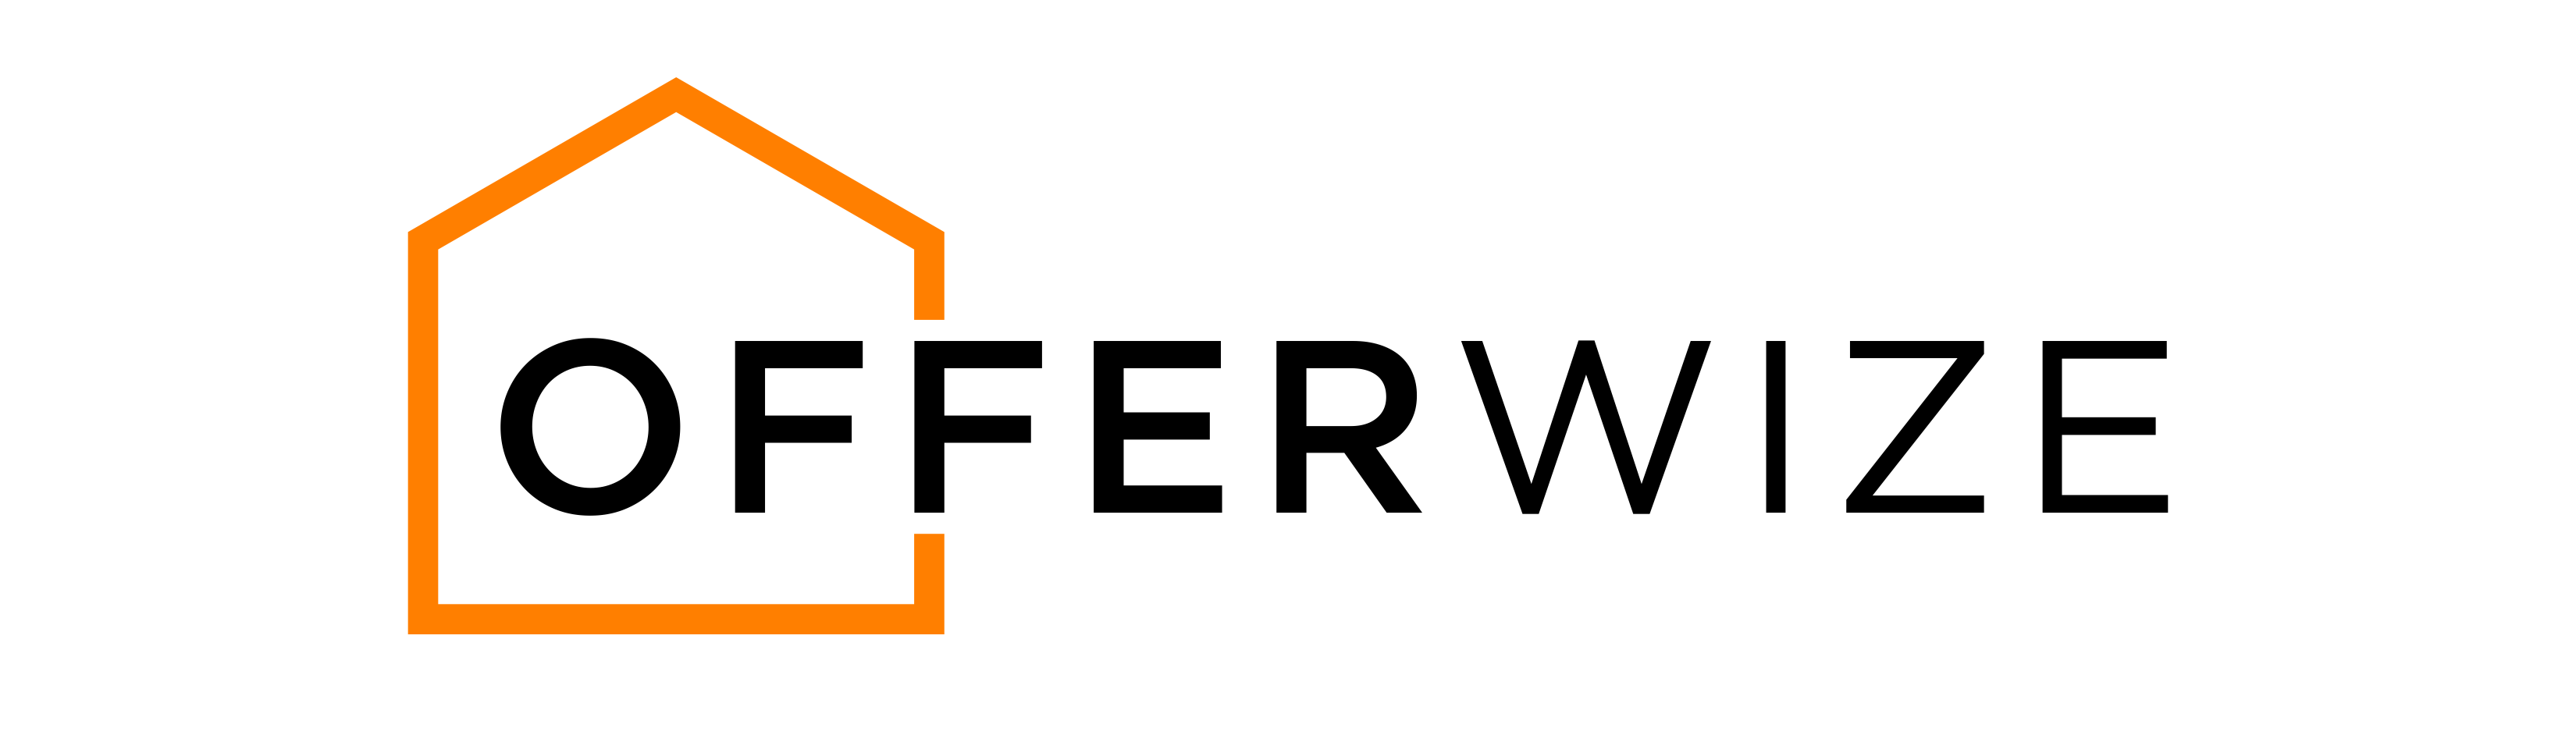 OfferWize logo